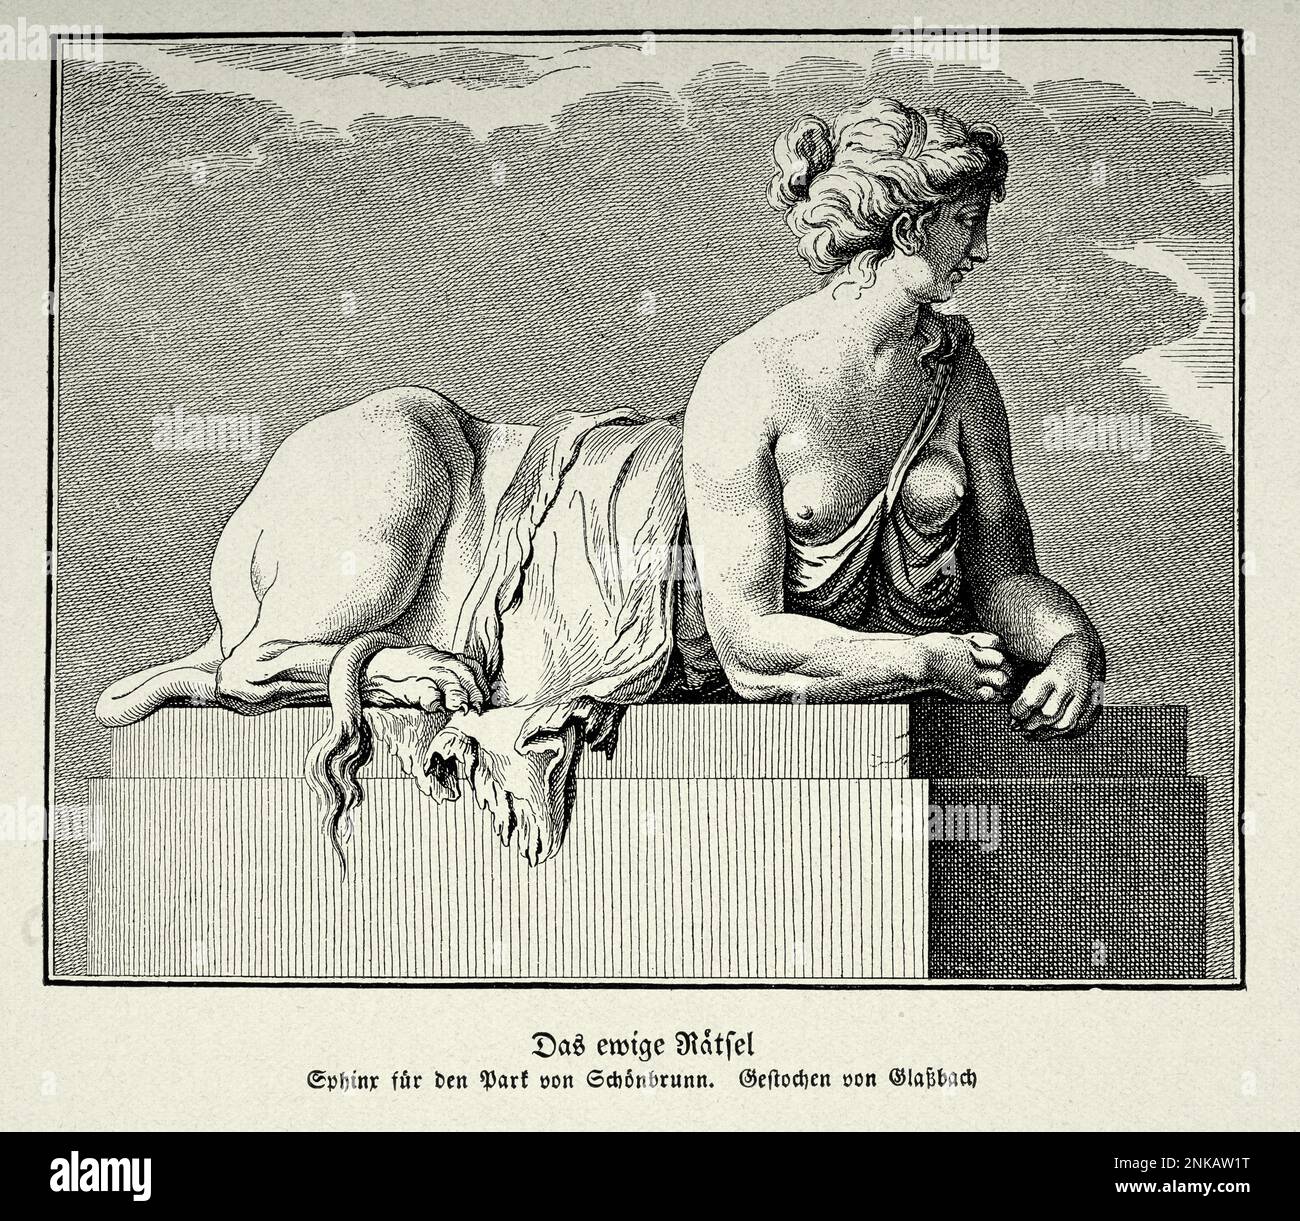 Illustrazione vintage il mistero eterno, Sfinge, una creatura mitica con la testa di un uomo, il corpo di un leone Foto Stock